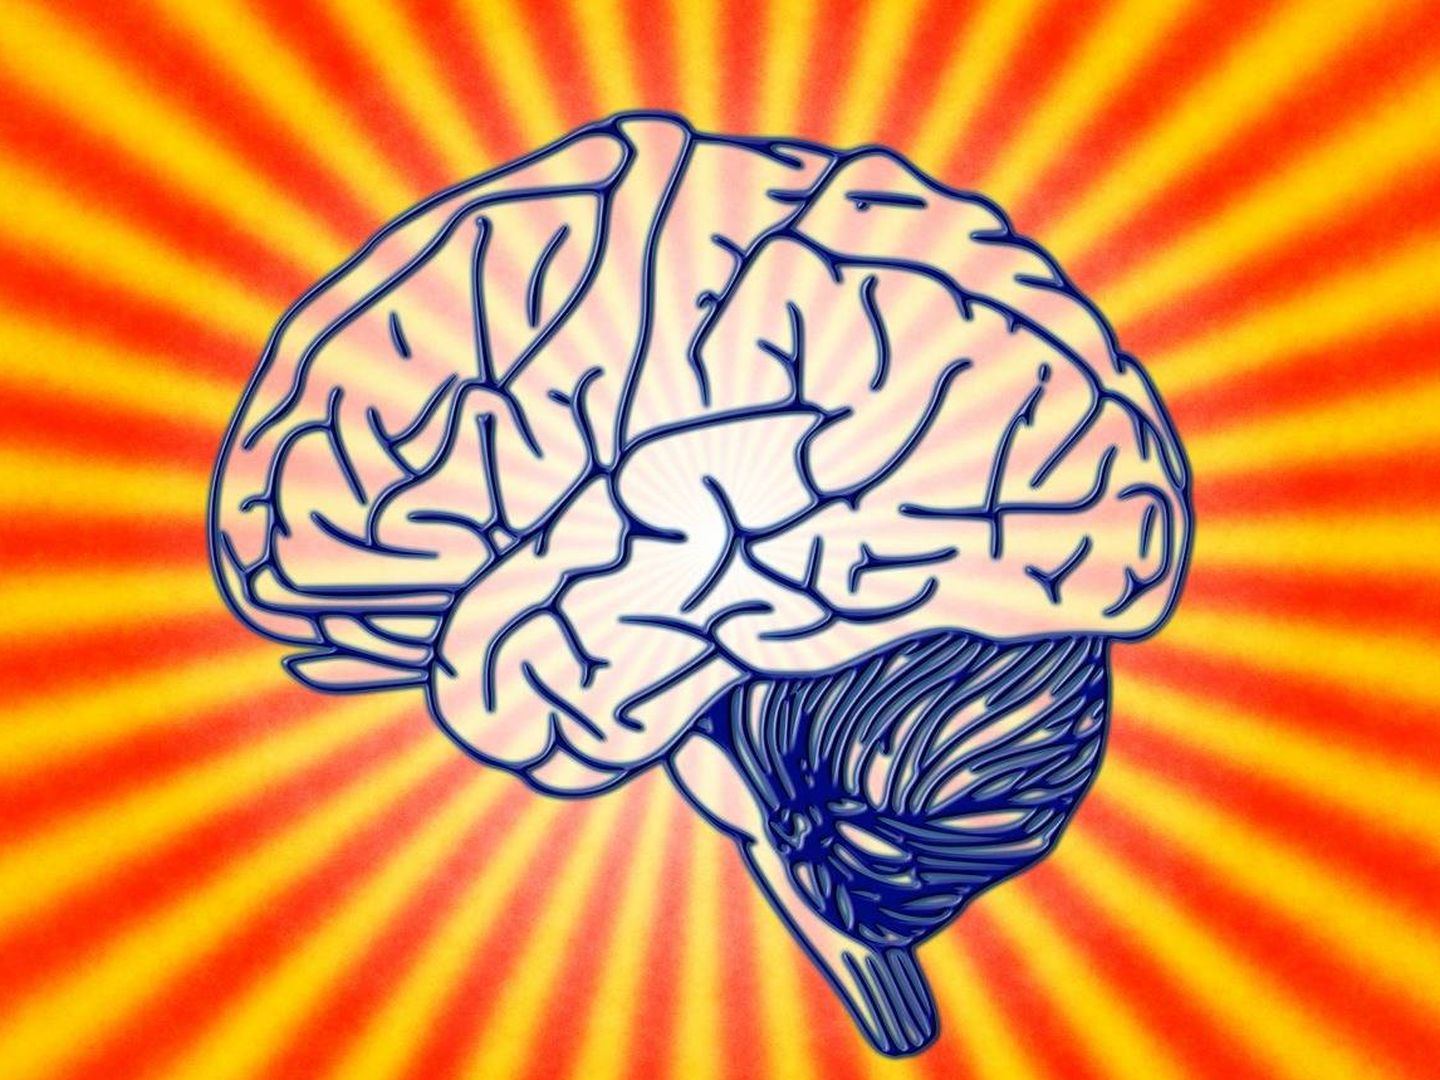 La ciencia aún no comprende cómo funciona la memoria en el cerebro (Foto: Pixabay)